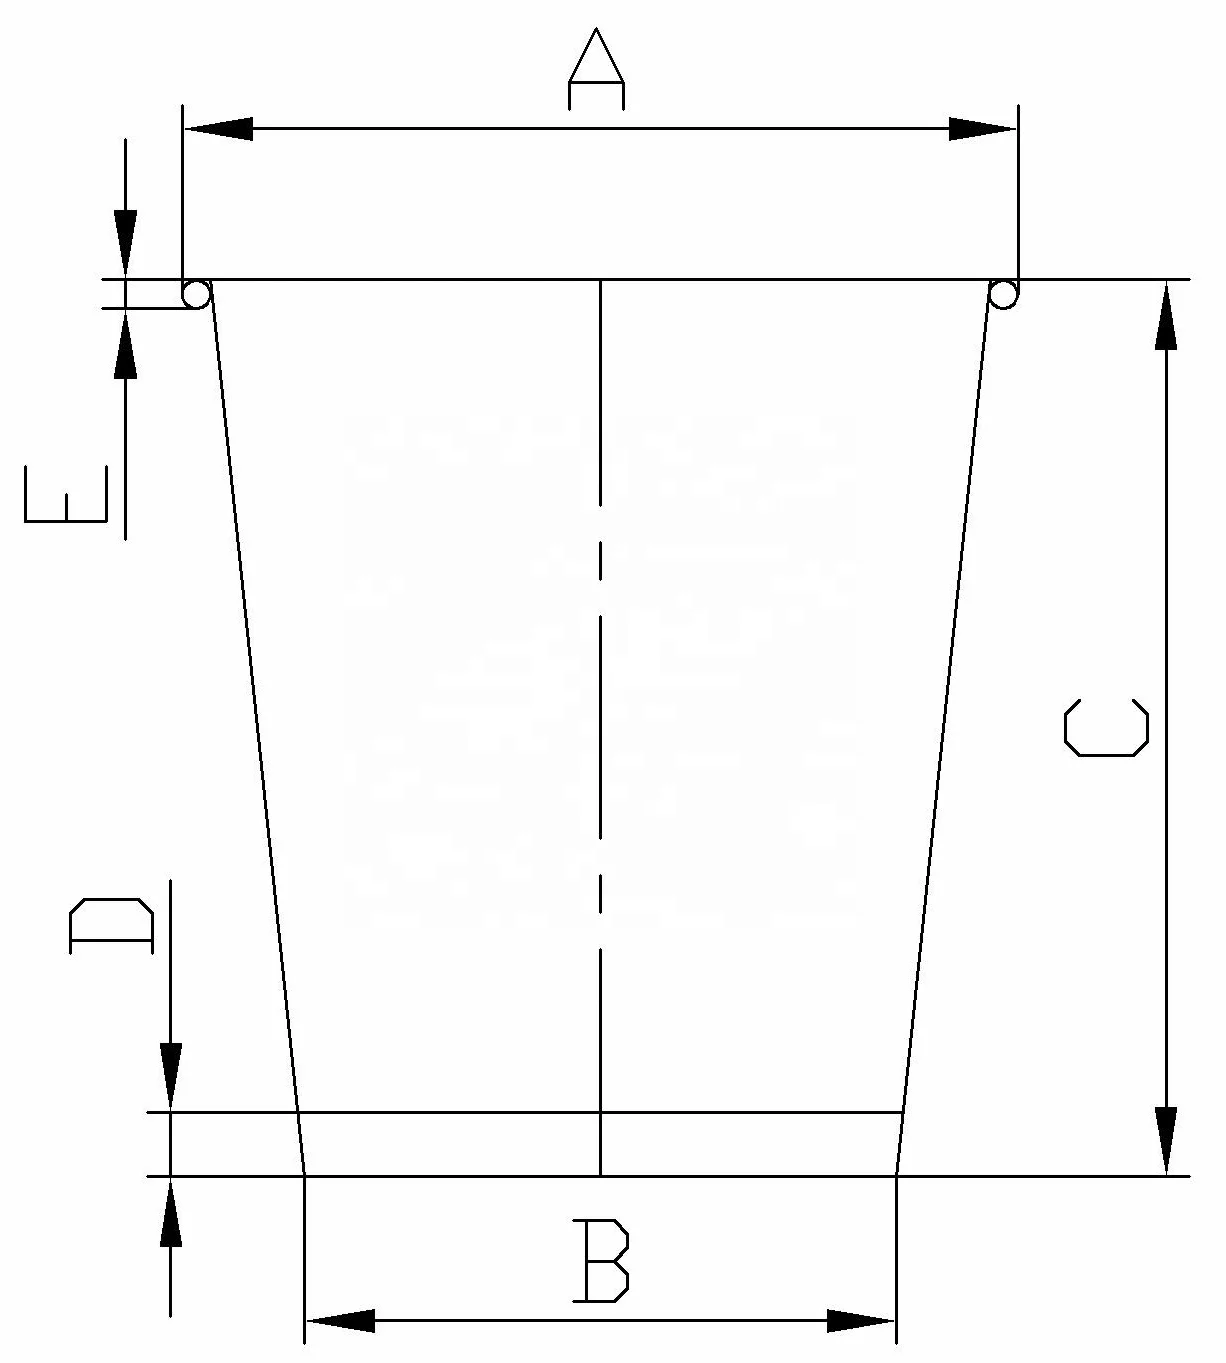 ZB-D Calix charta automataria formans machinam, vectem verticalem et sine archa Capys